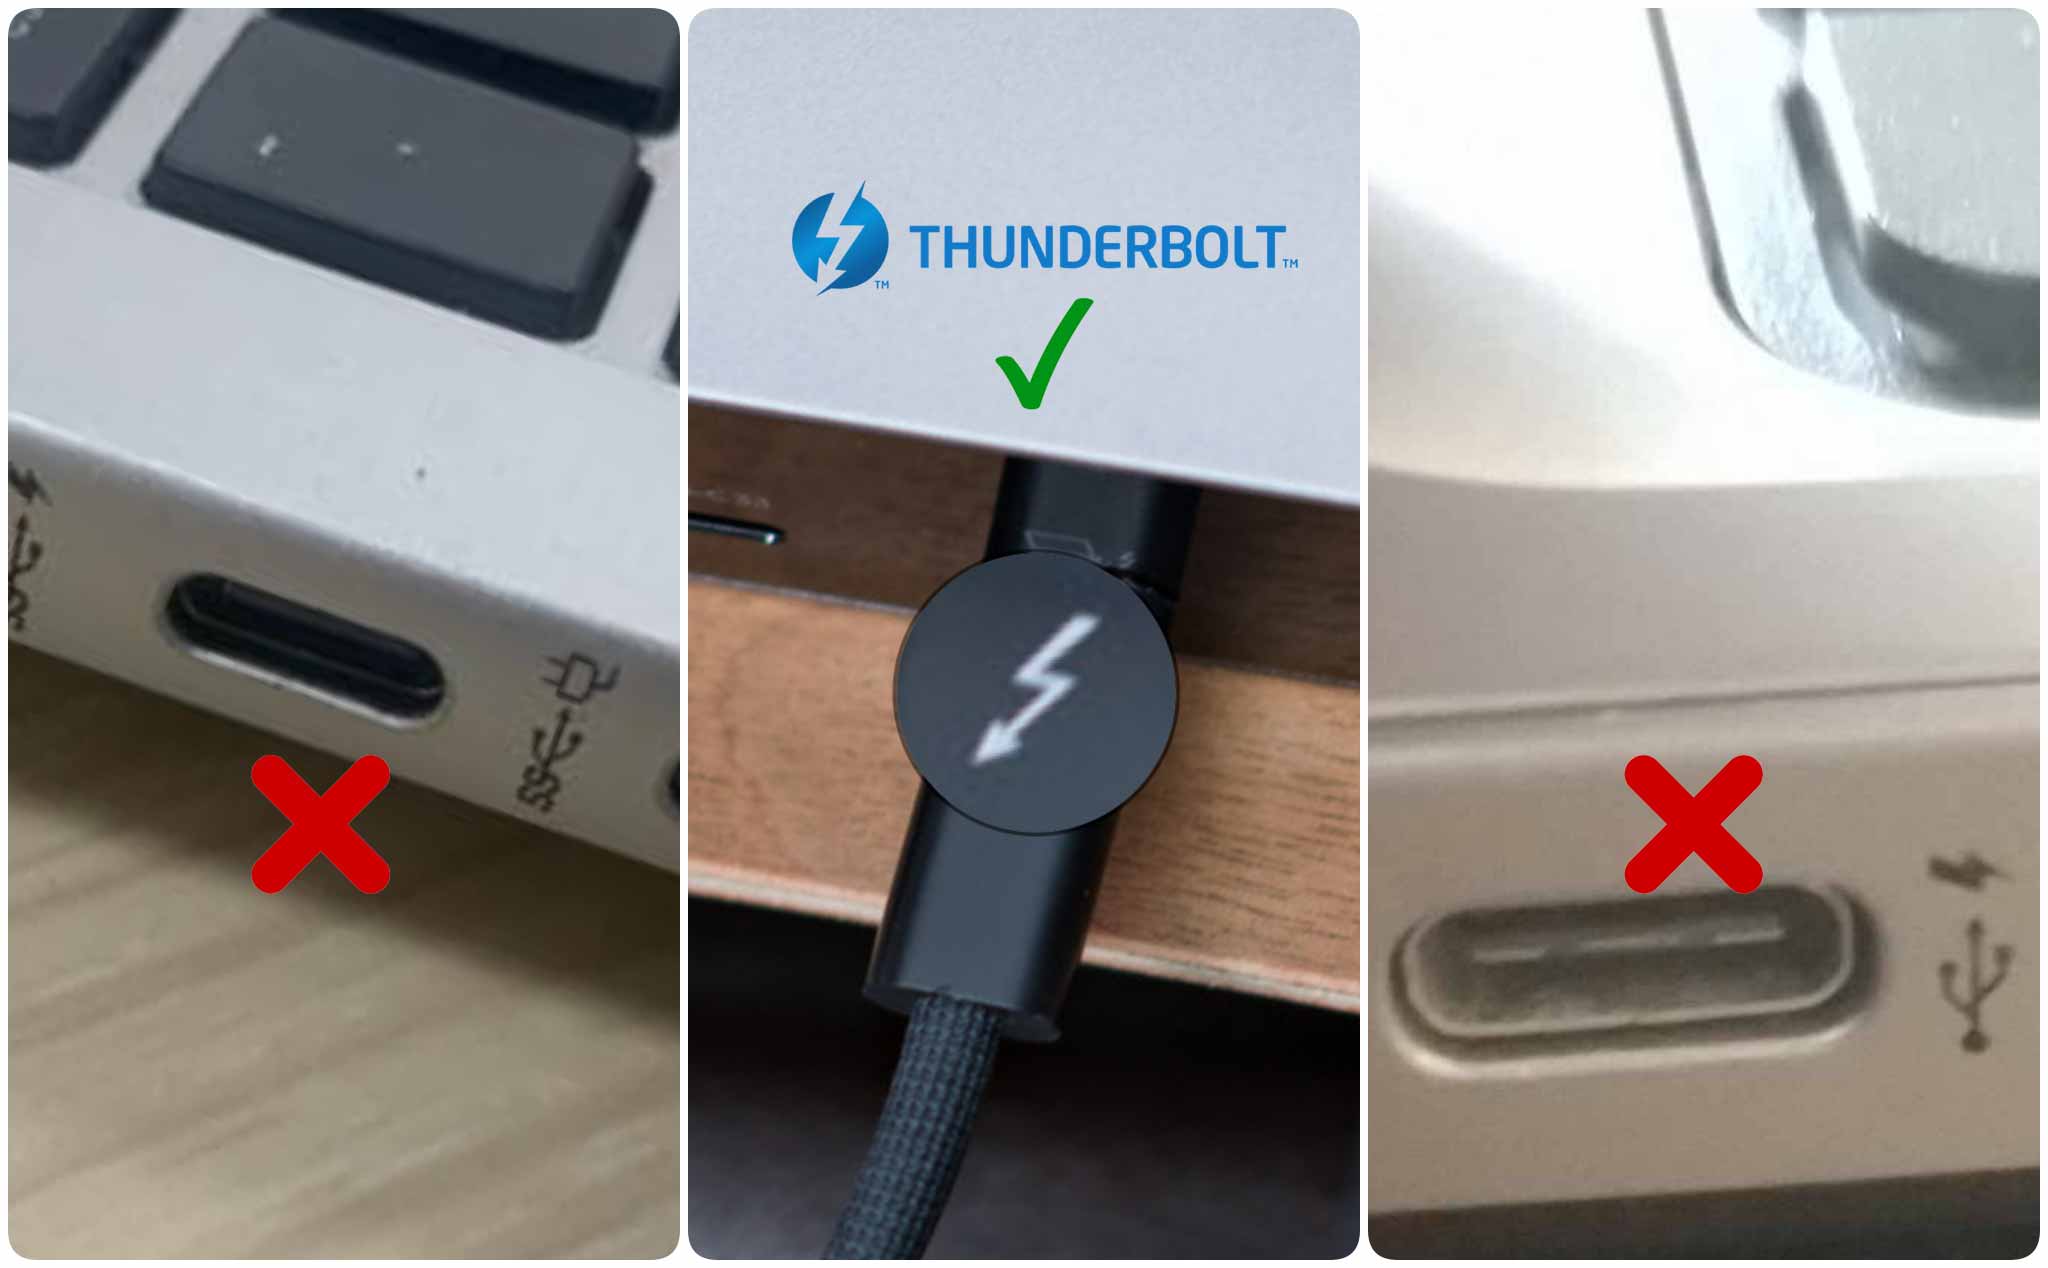 Ký hiệu Thunderbolt trên cổng USB-C dễ nhầm lẫn qua cổng có tính năng sạc